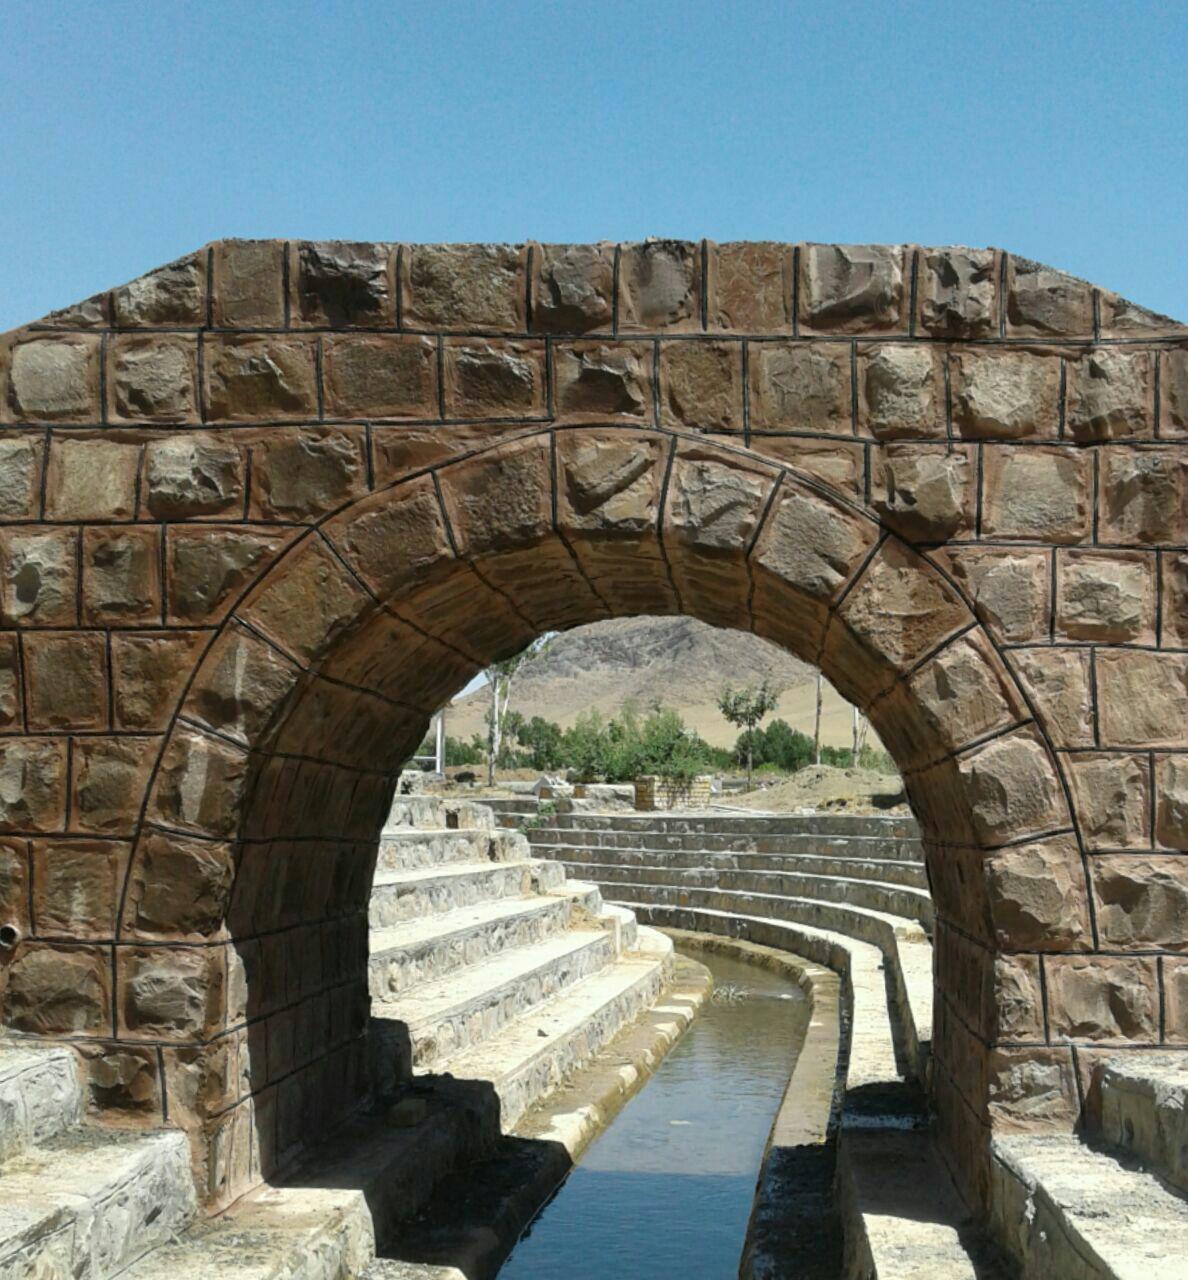 سنگ مالون کار شده در پل قوسی پارک شهباز اراک